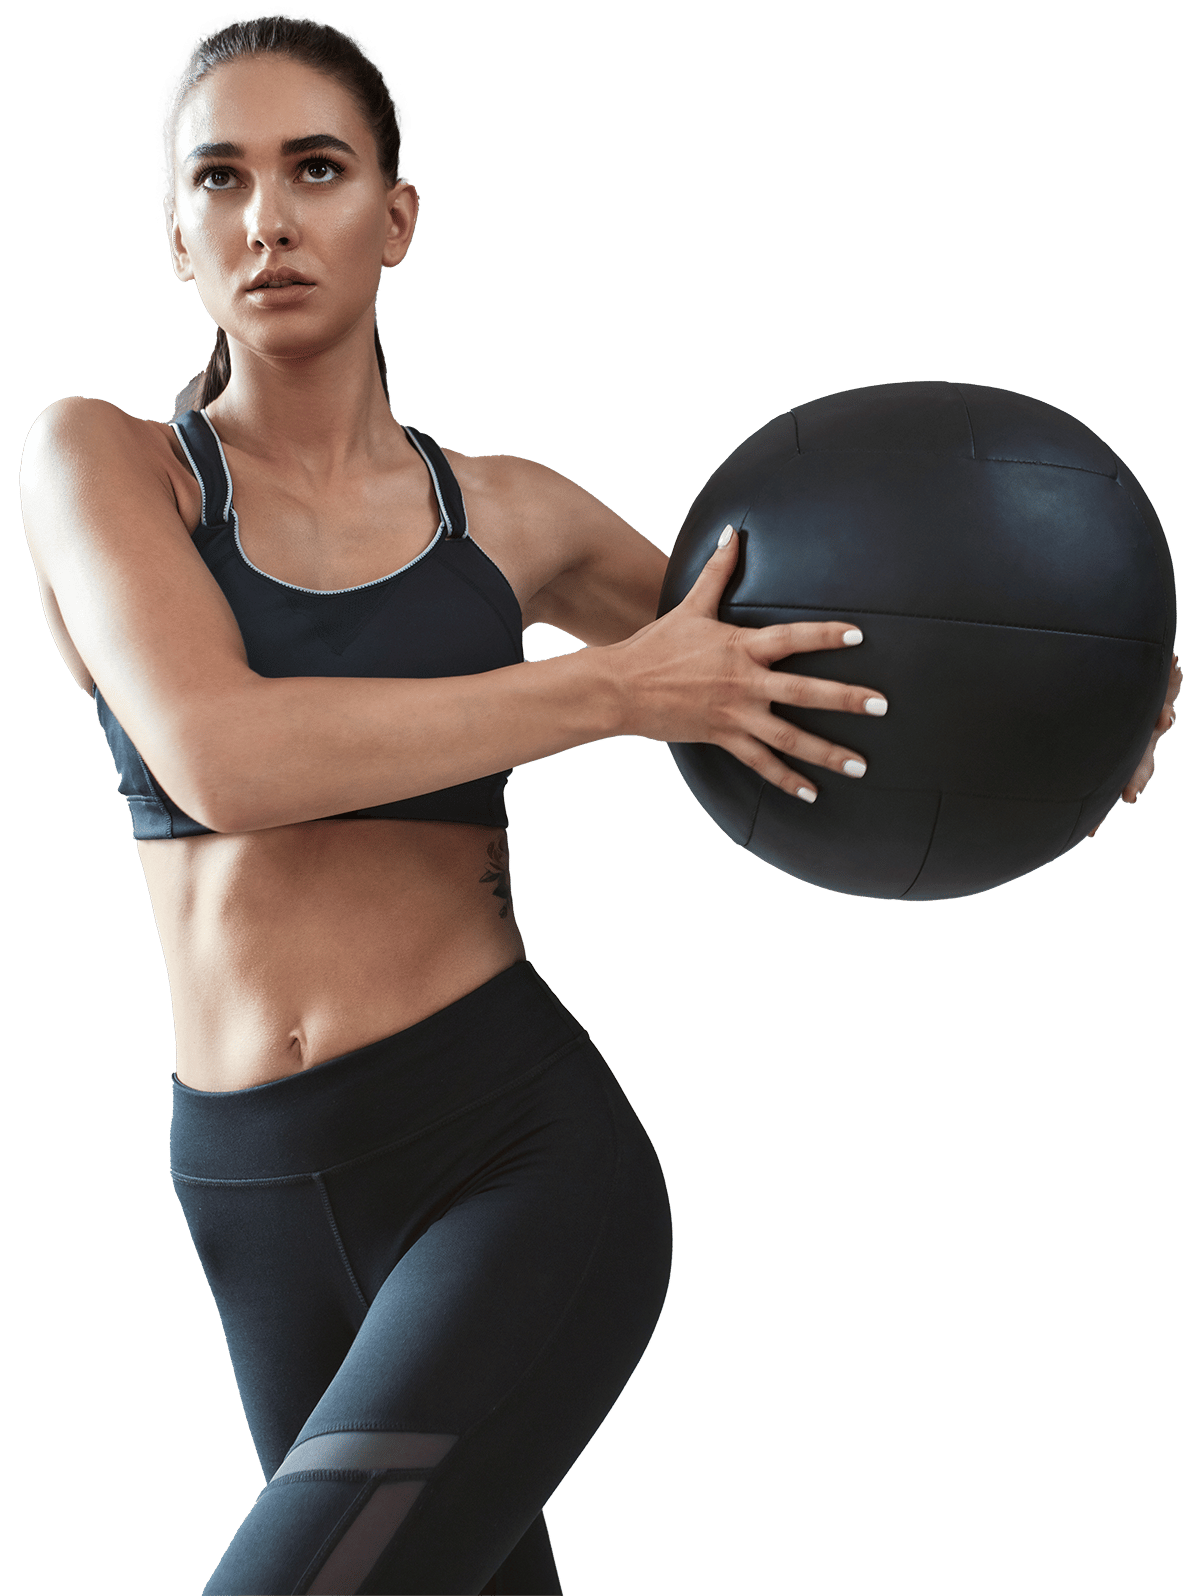 Basics Pelota medicinal para entrenamientos, ejercicios de equilibrio